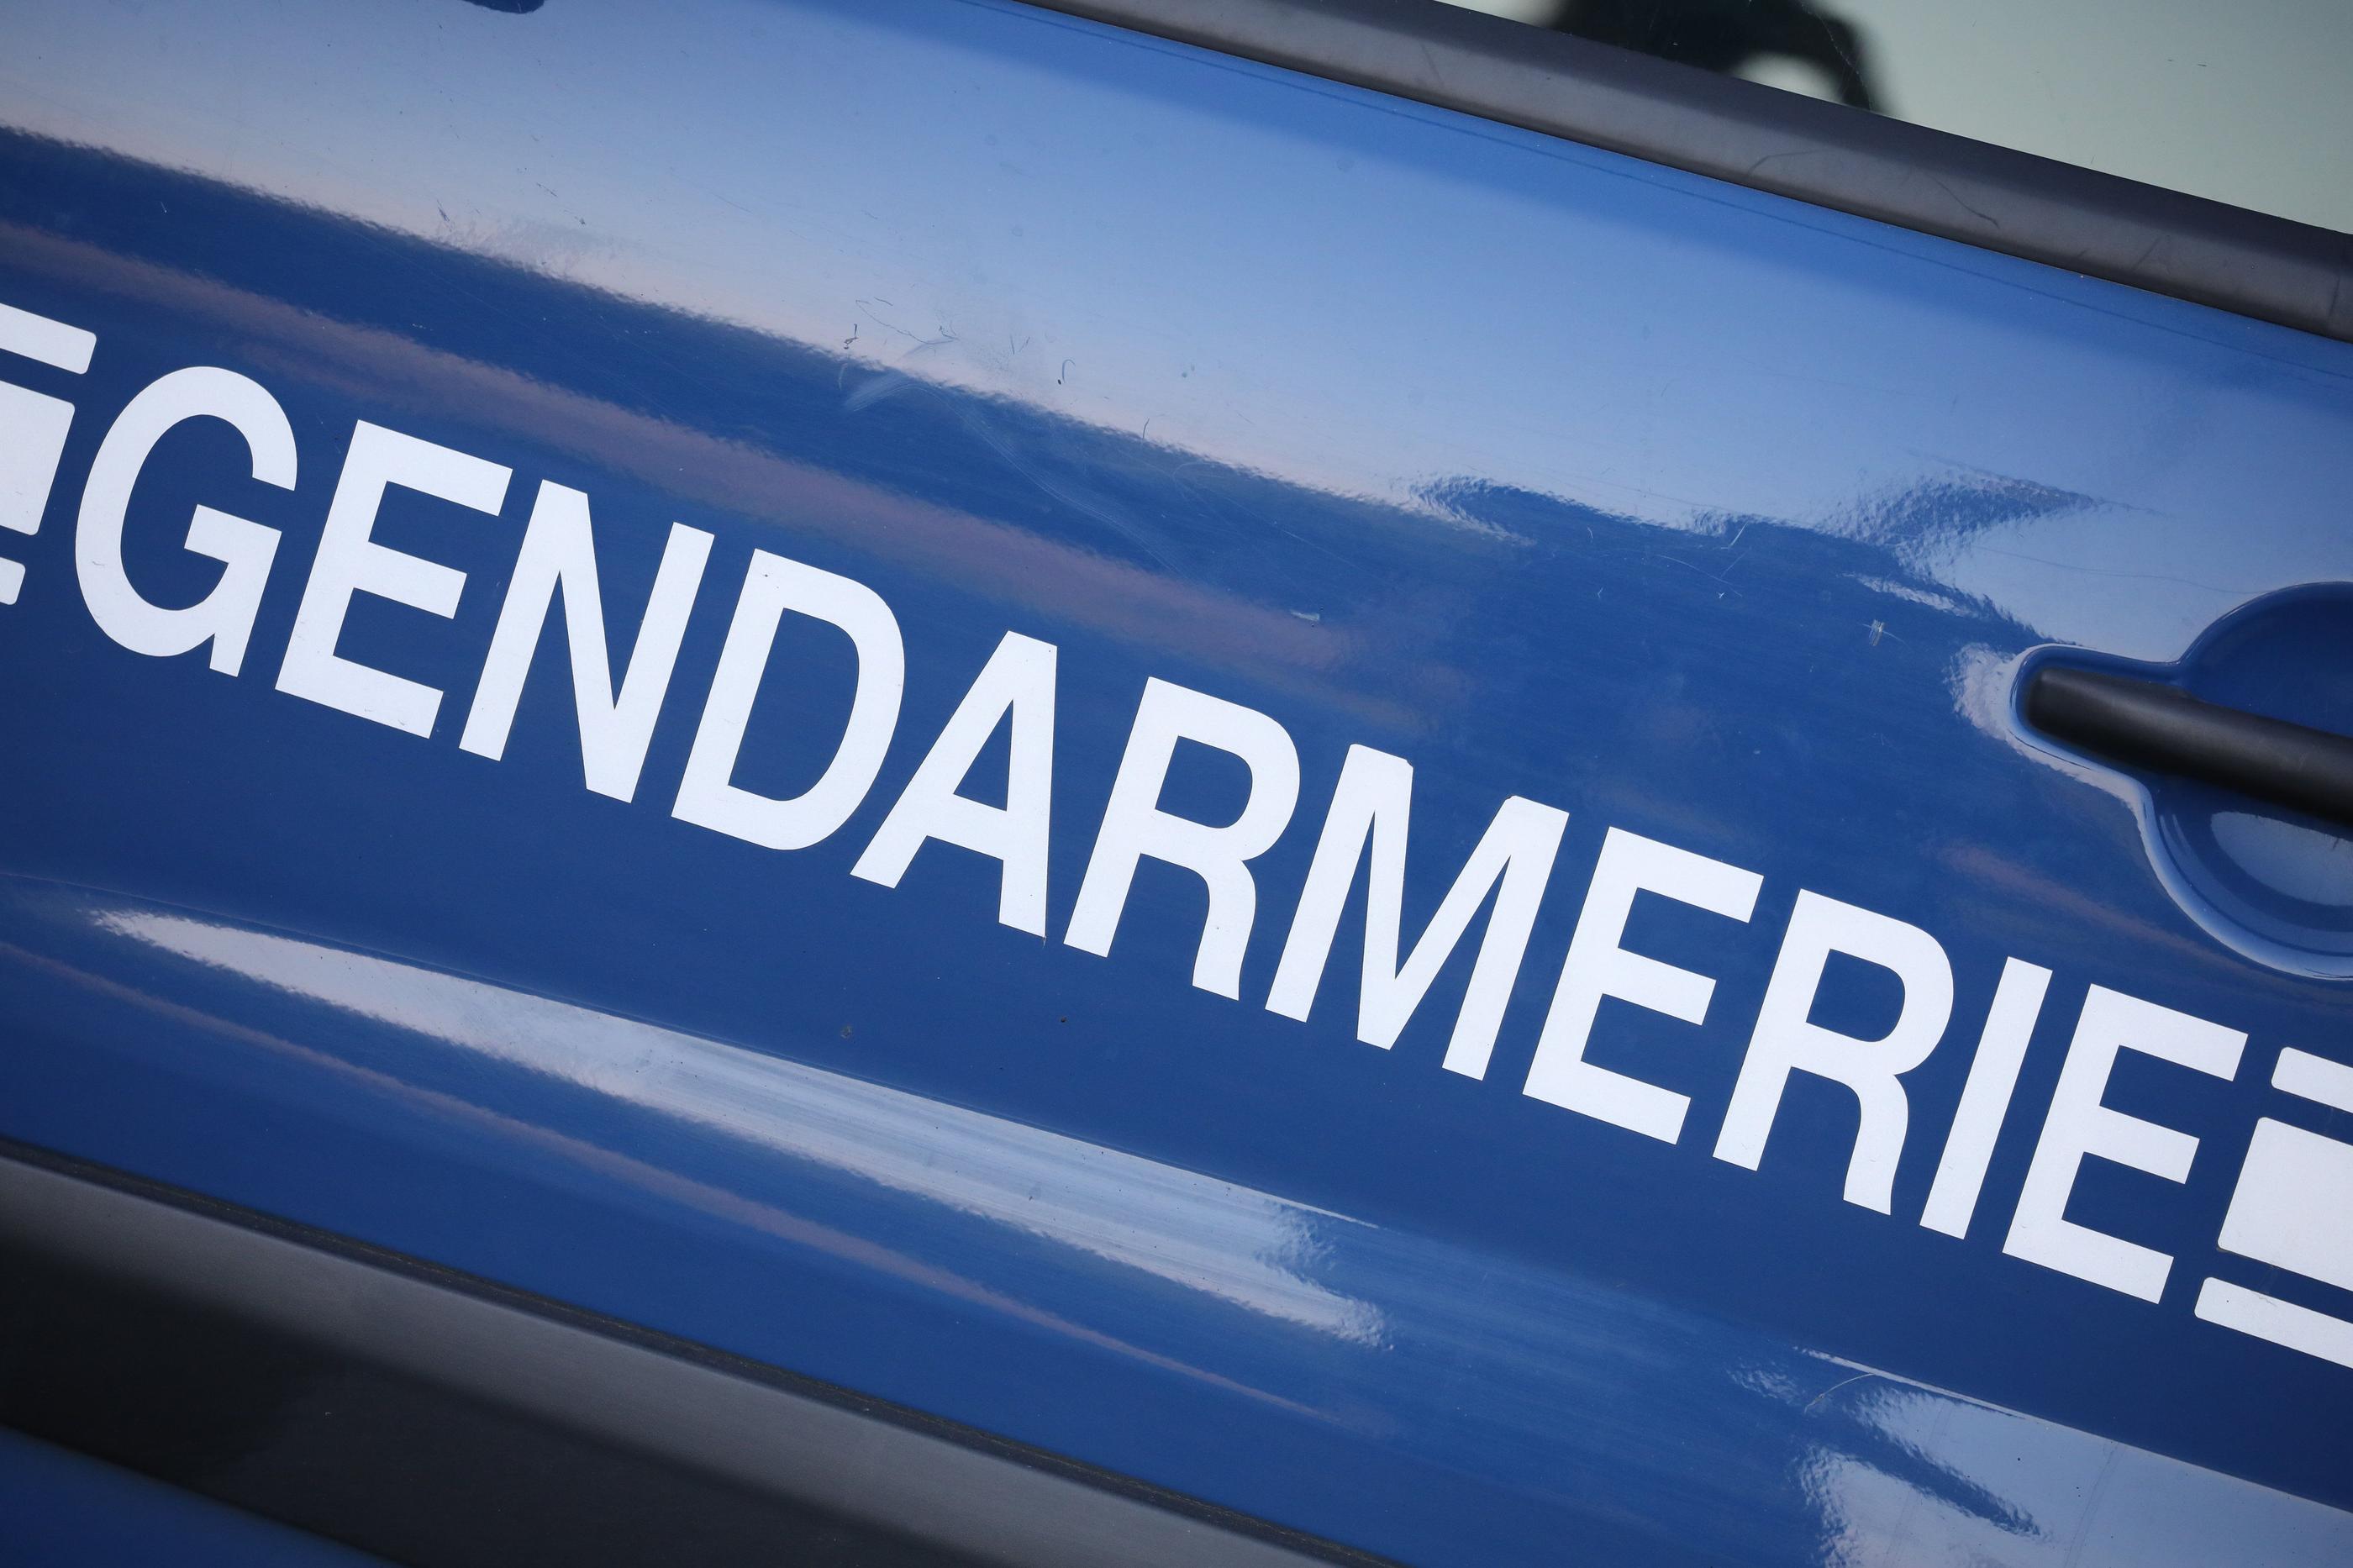 La gendarmerie avait lancé un appel à témoins pour identifier les suspects. LP/Arnaud Journois